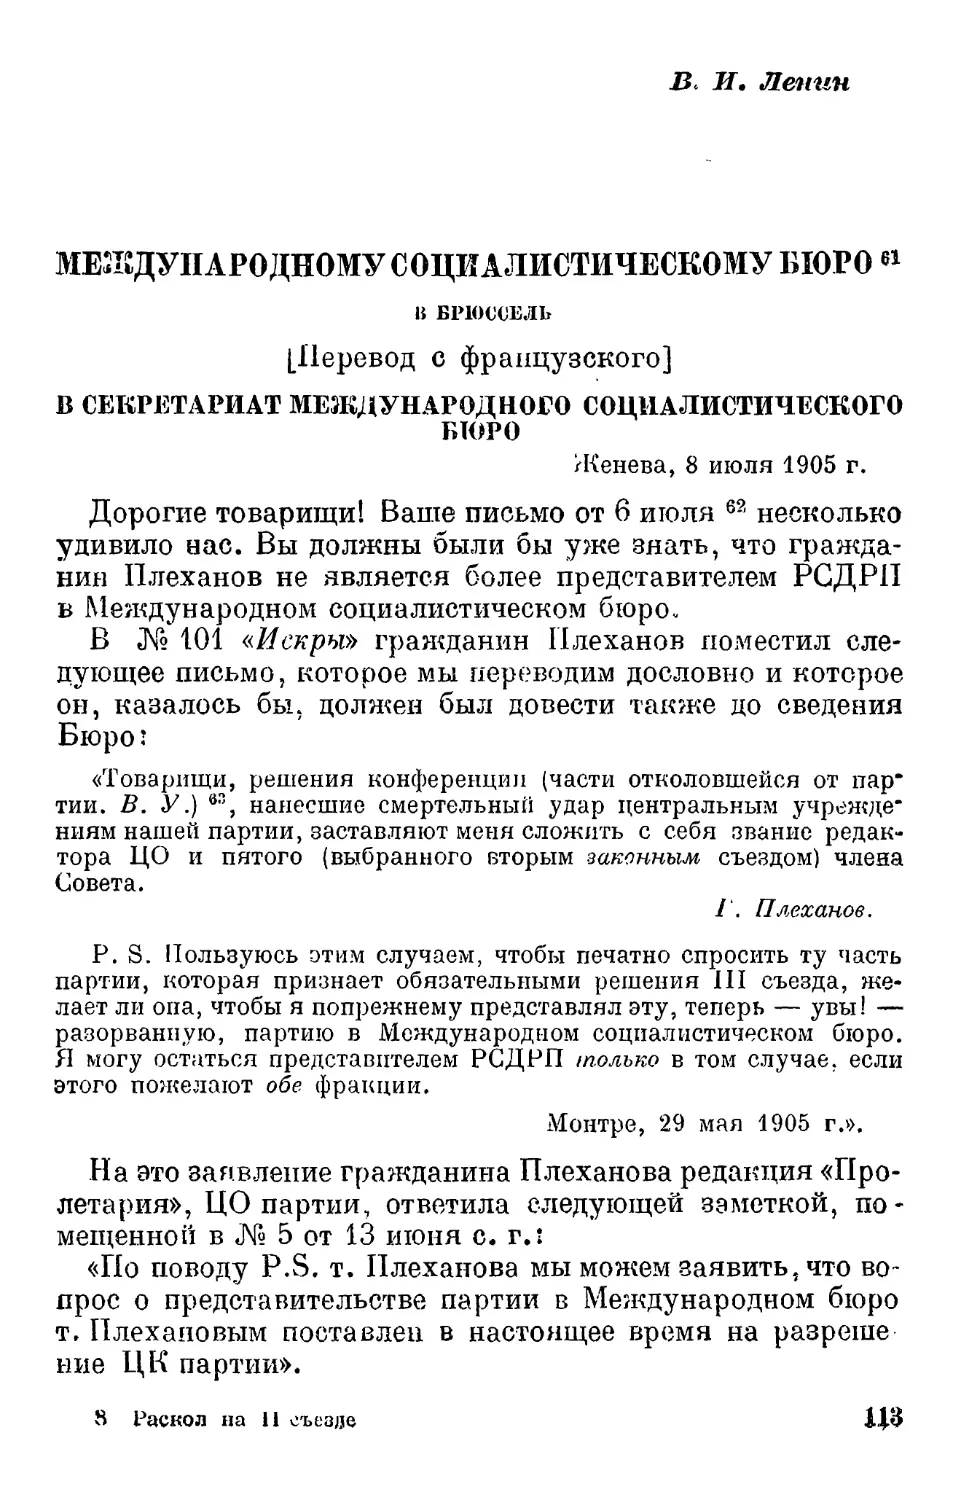 В.И. Ленин. Международному социалистическому бюро. 8 июля 1905 г.